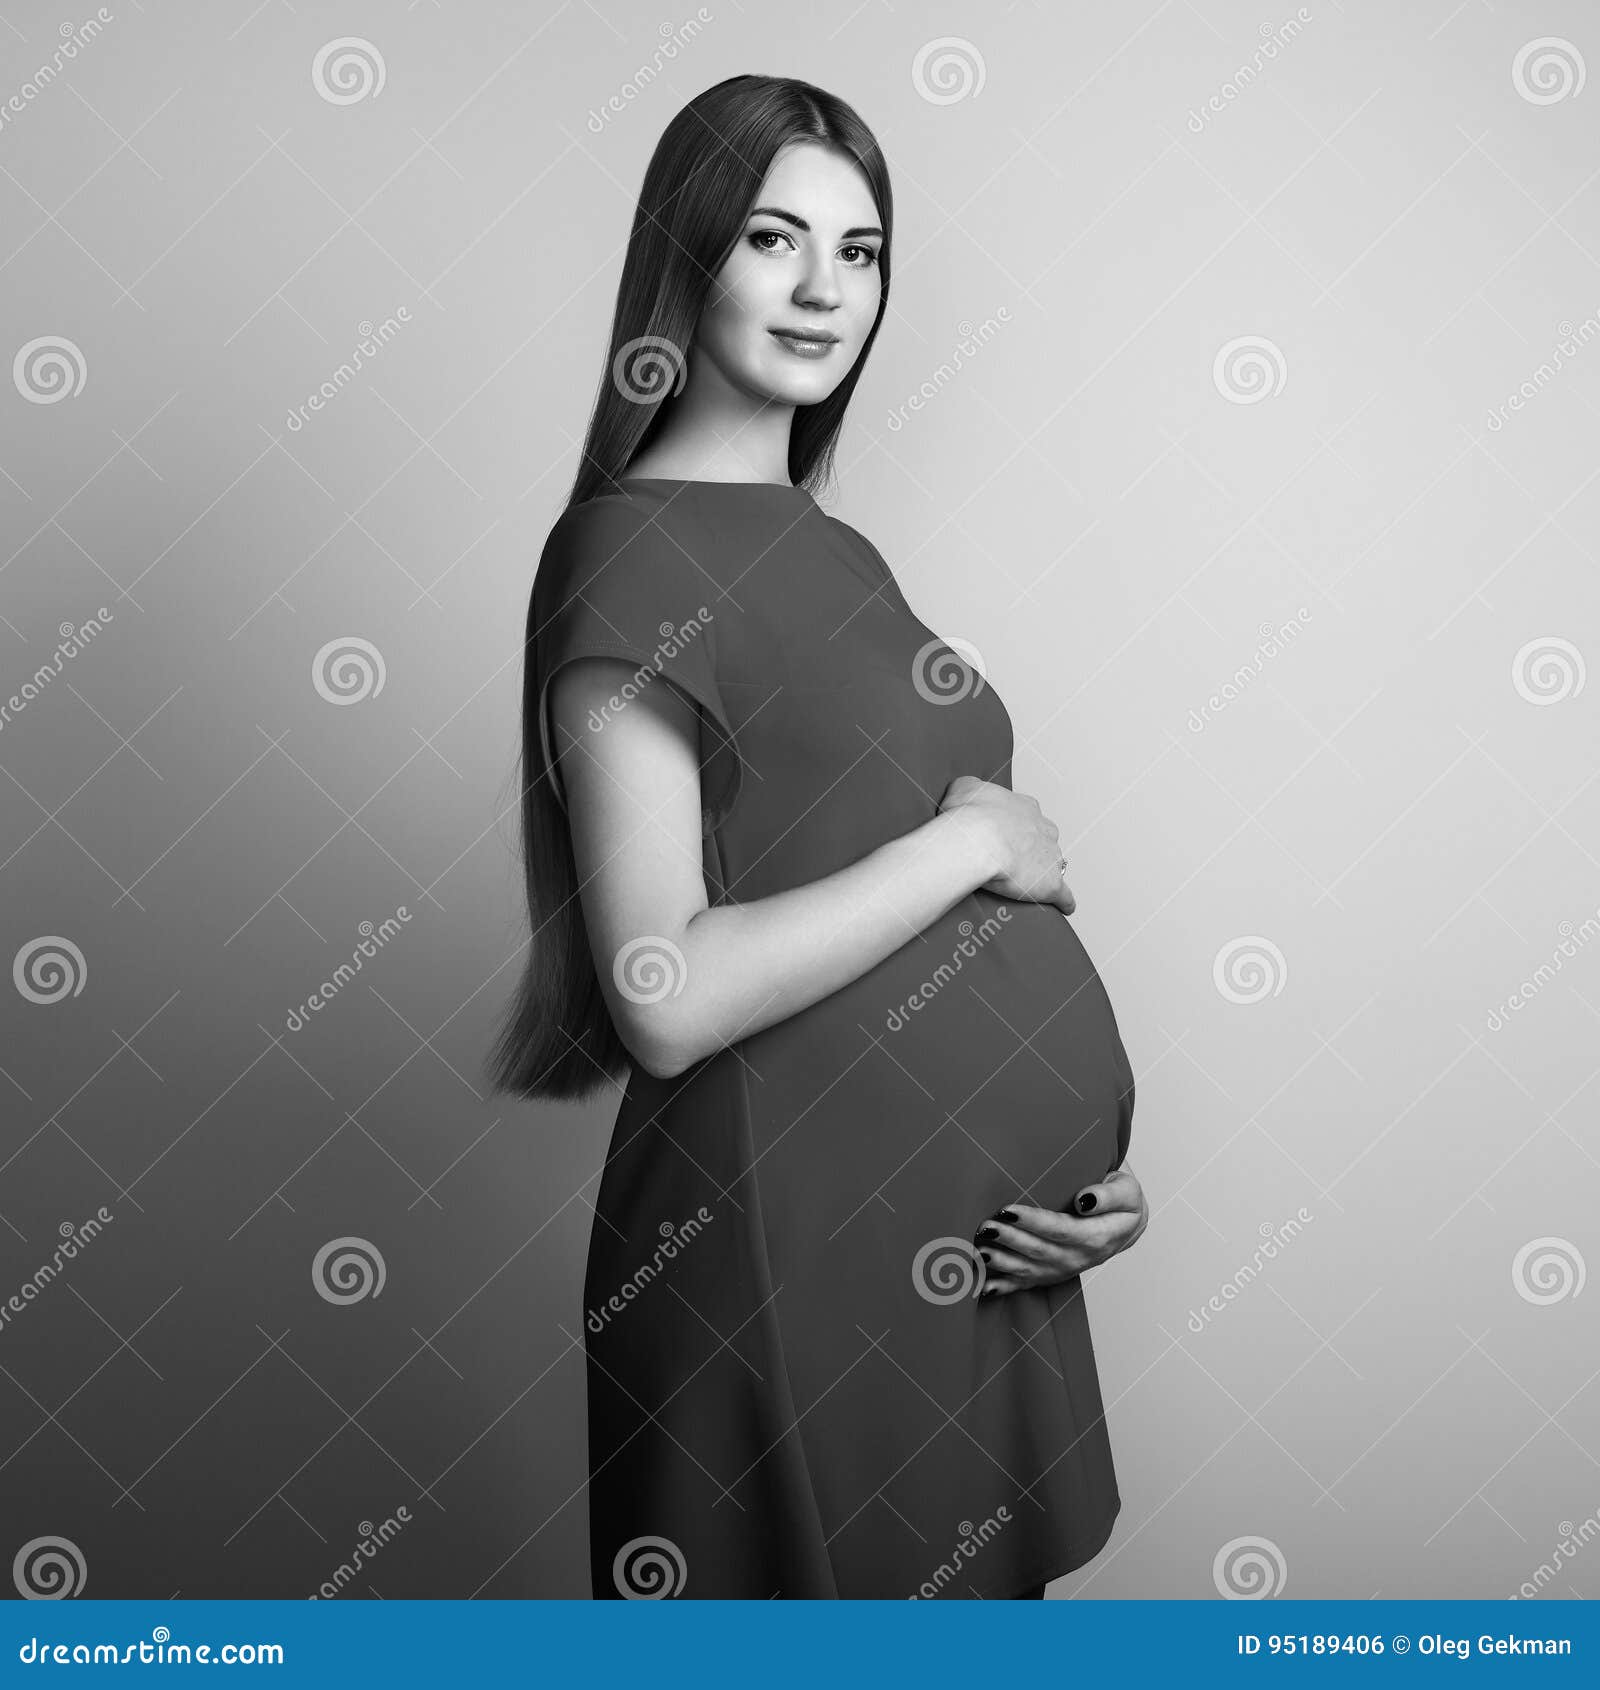 最美孕妇装图片,长得最漂亮的孕妇照片图片-1-6图